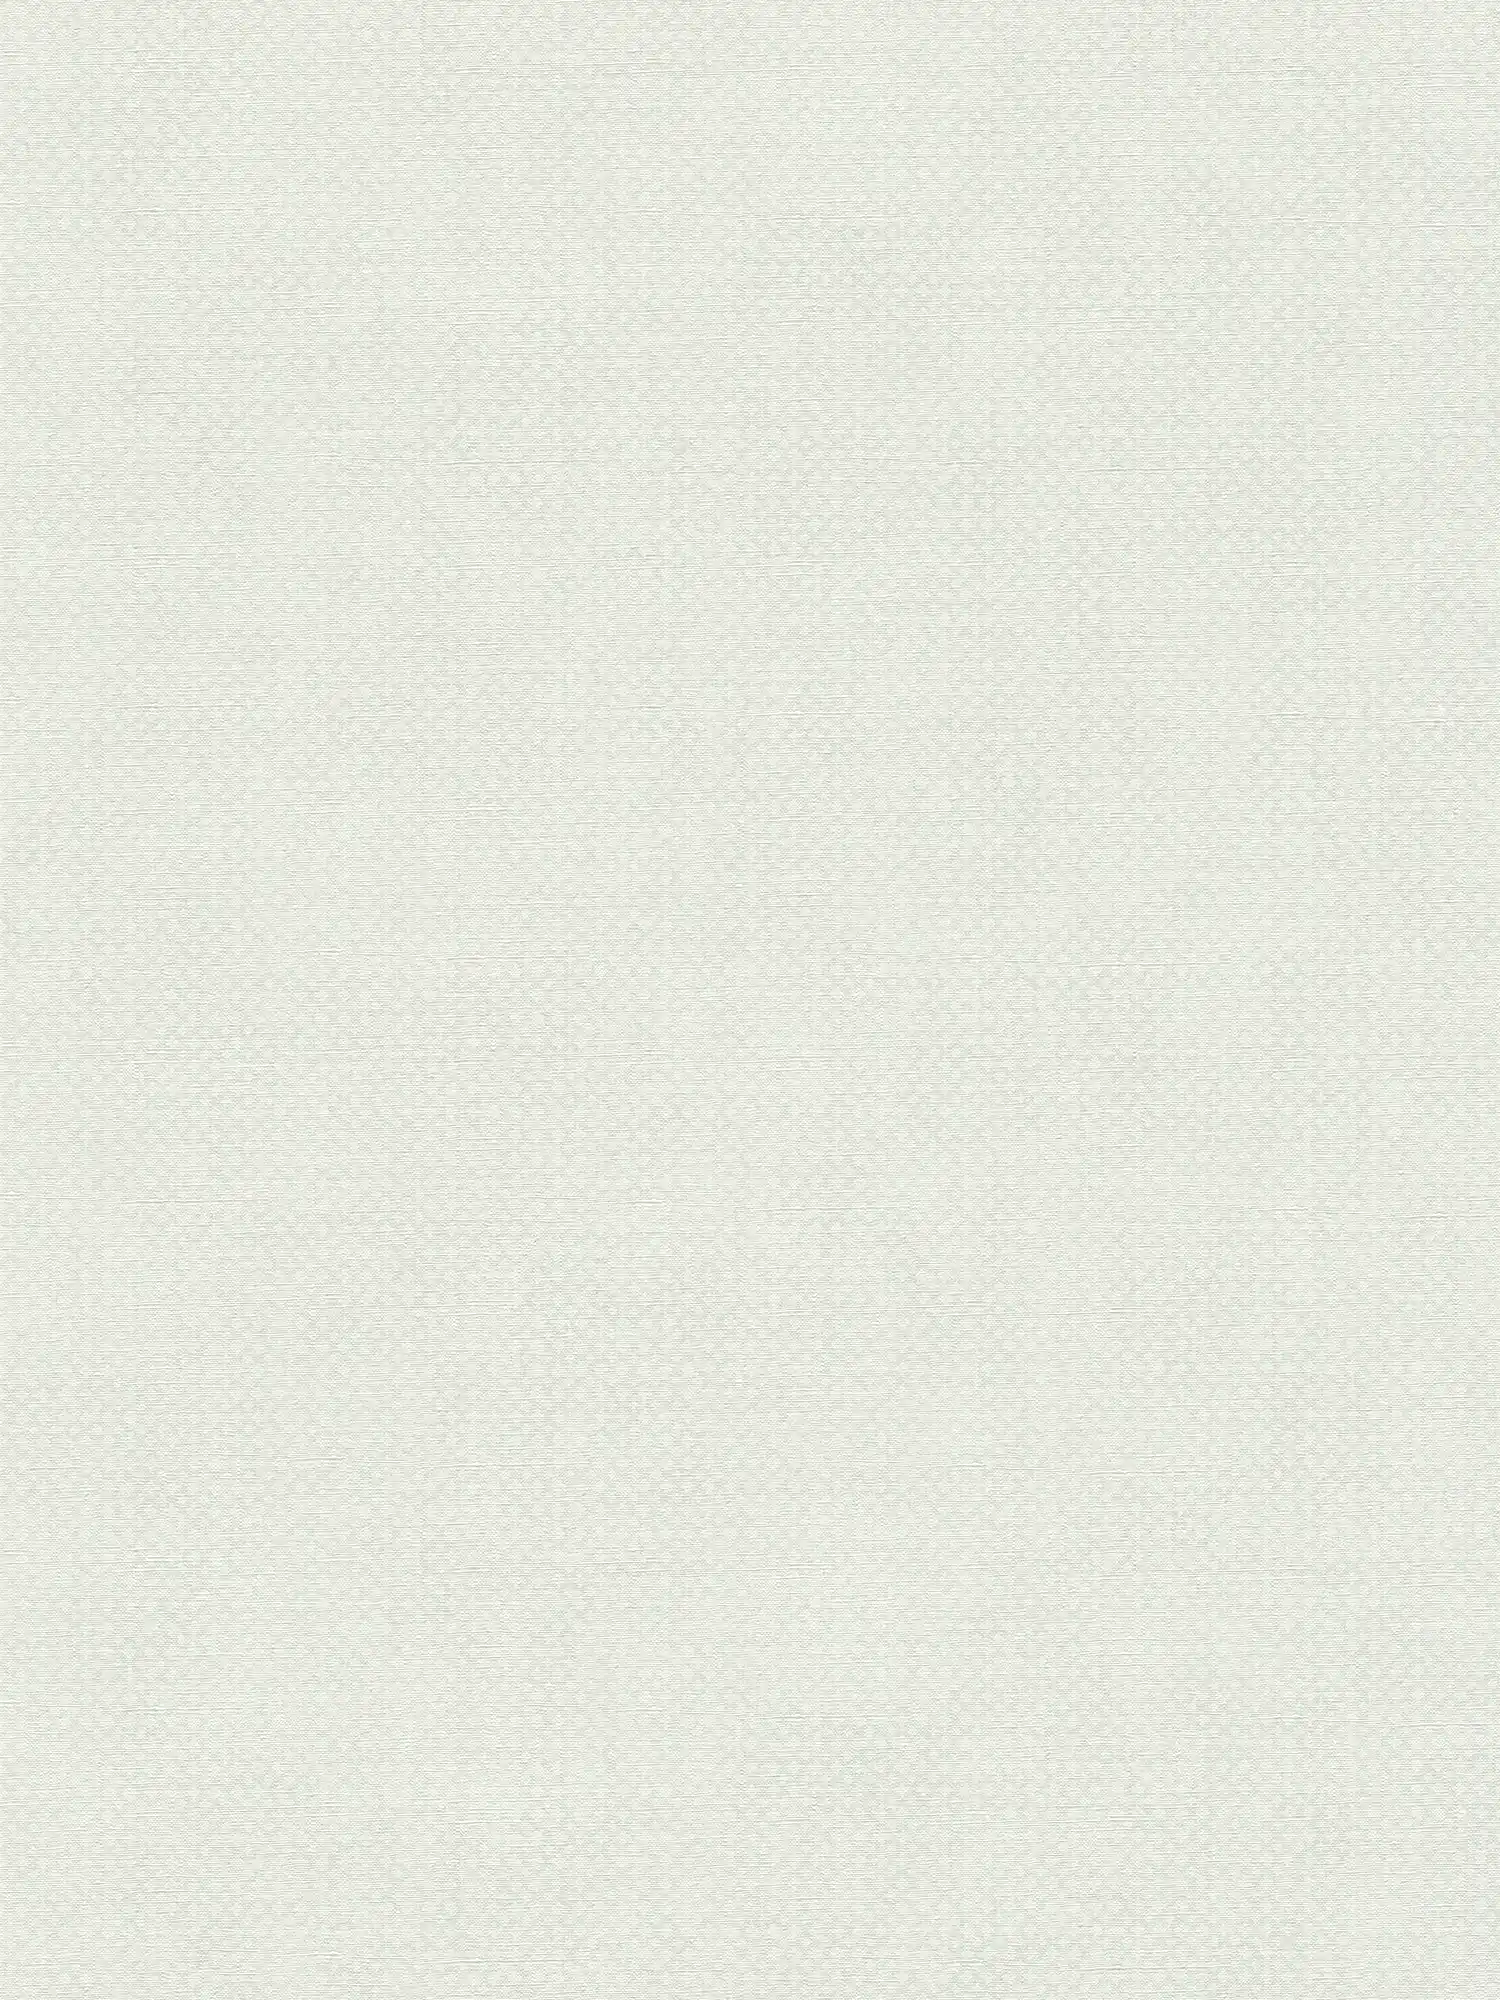 Carta da parati in tessuto non tessuto con motivo a trama fine - grigio, bianco
